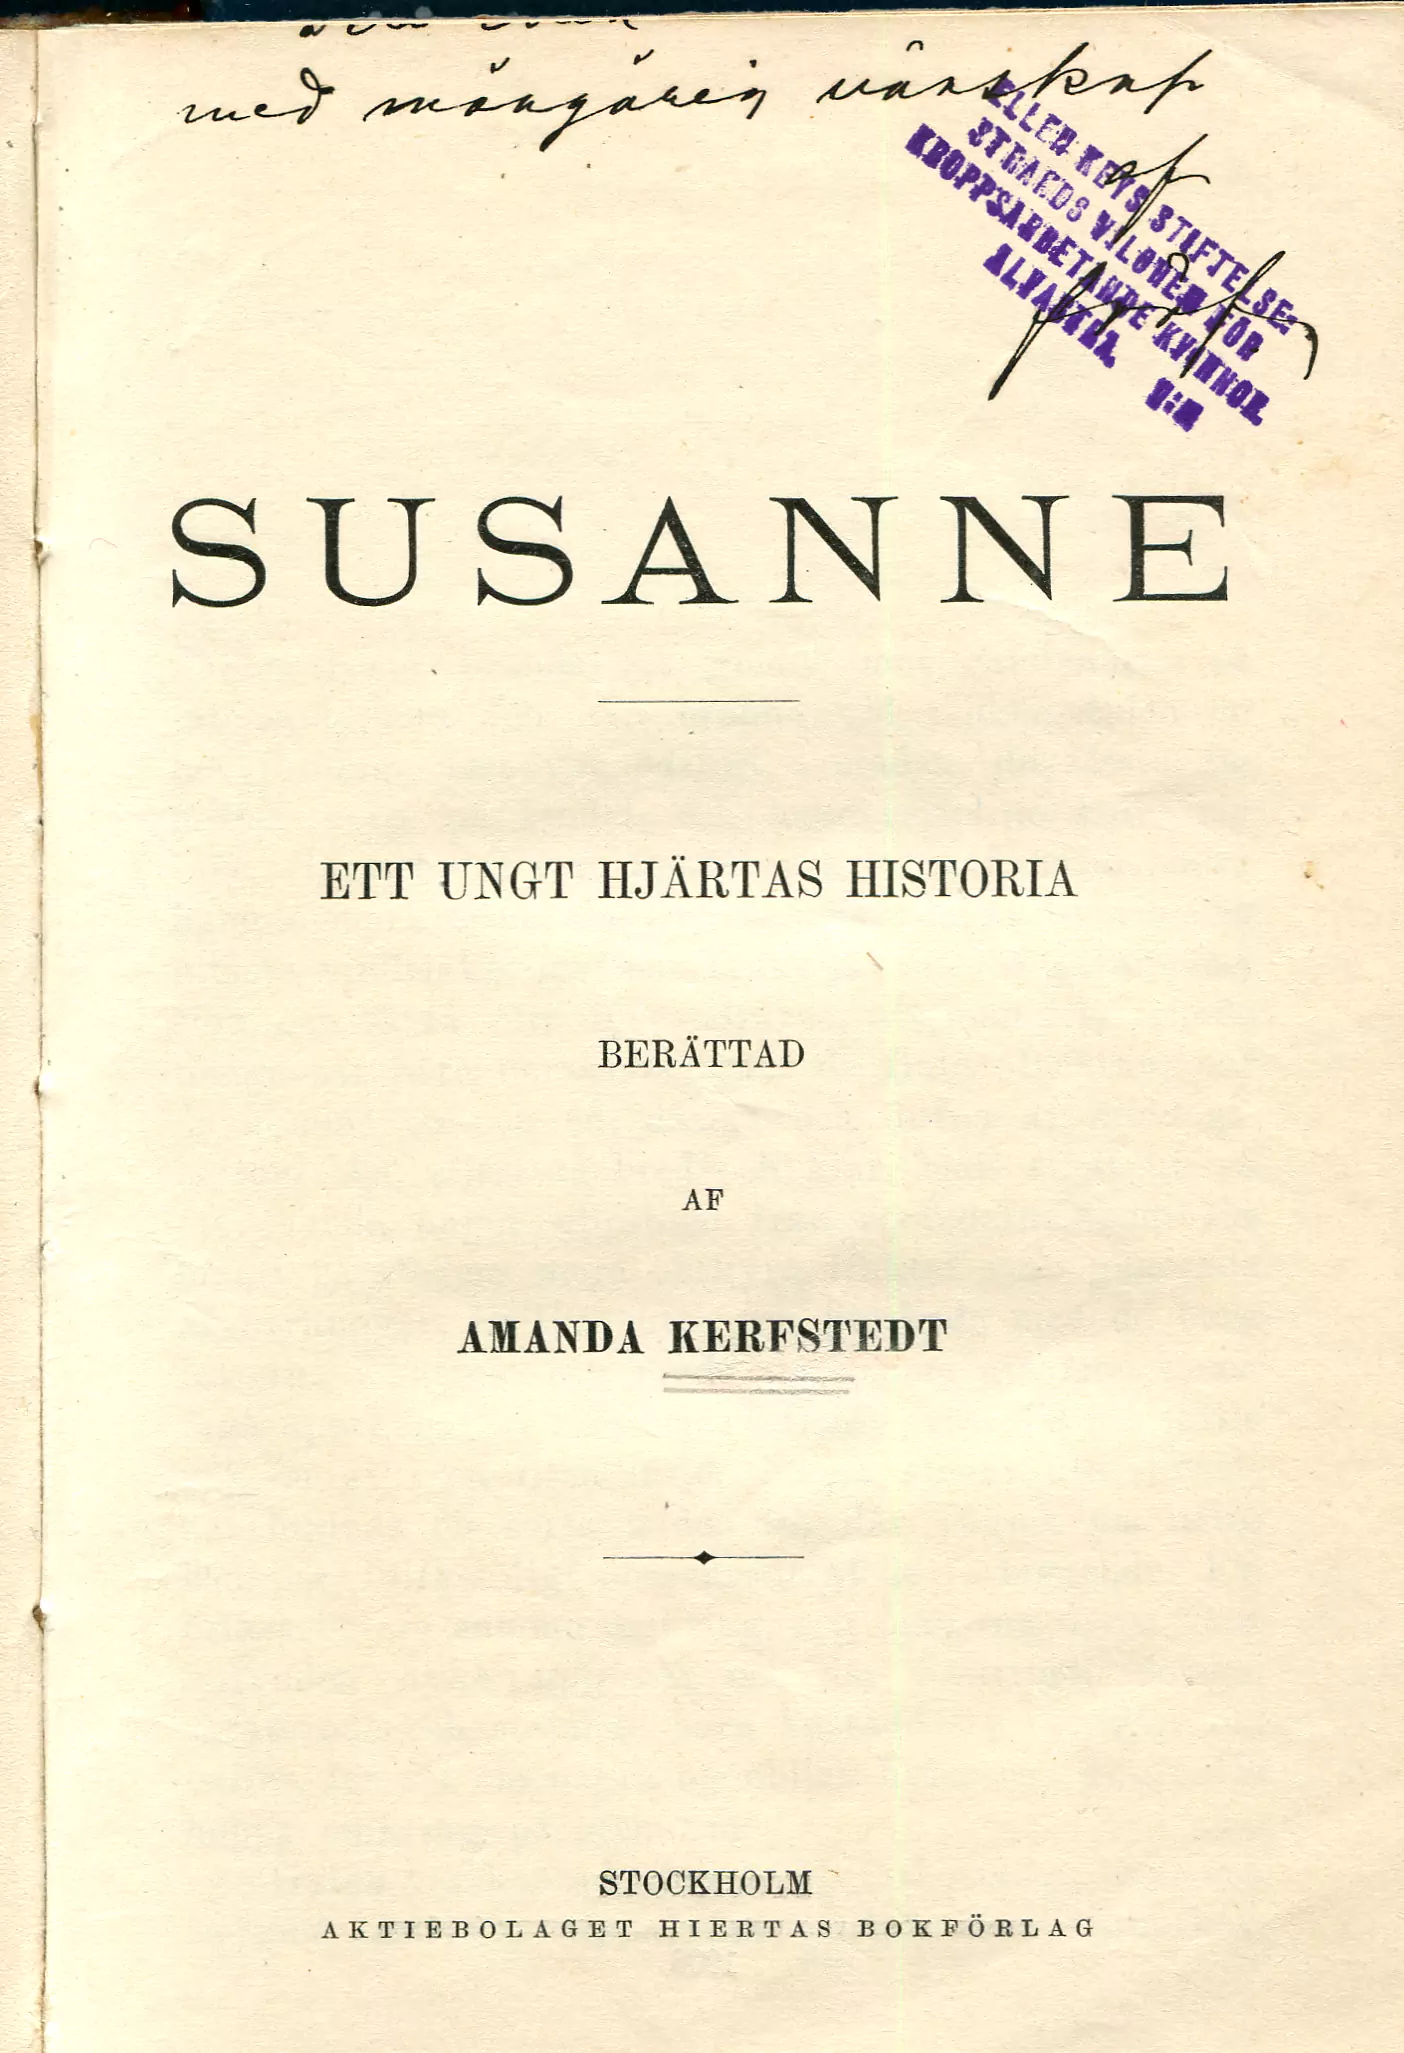 Susanne , Stockholm 1903